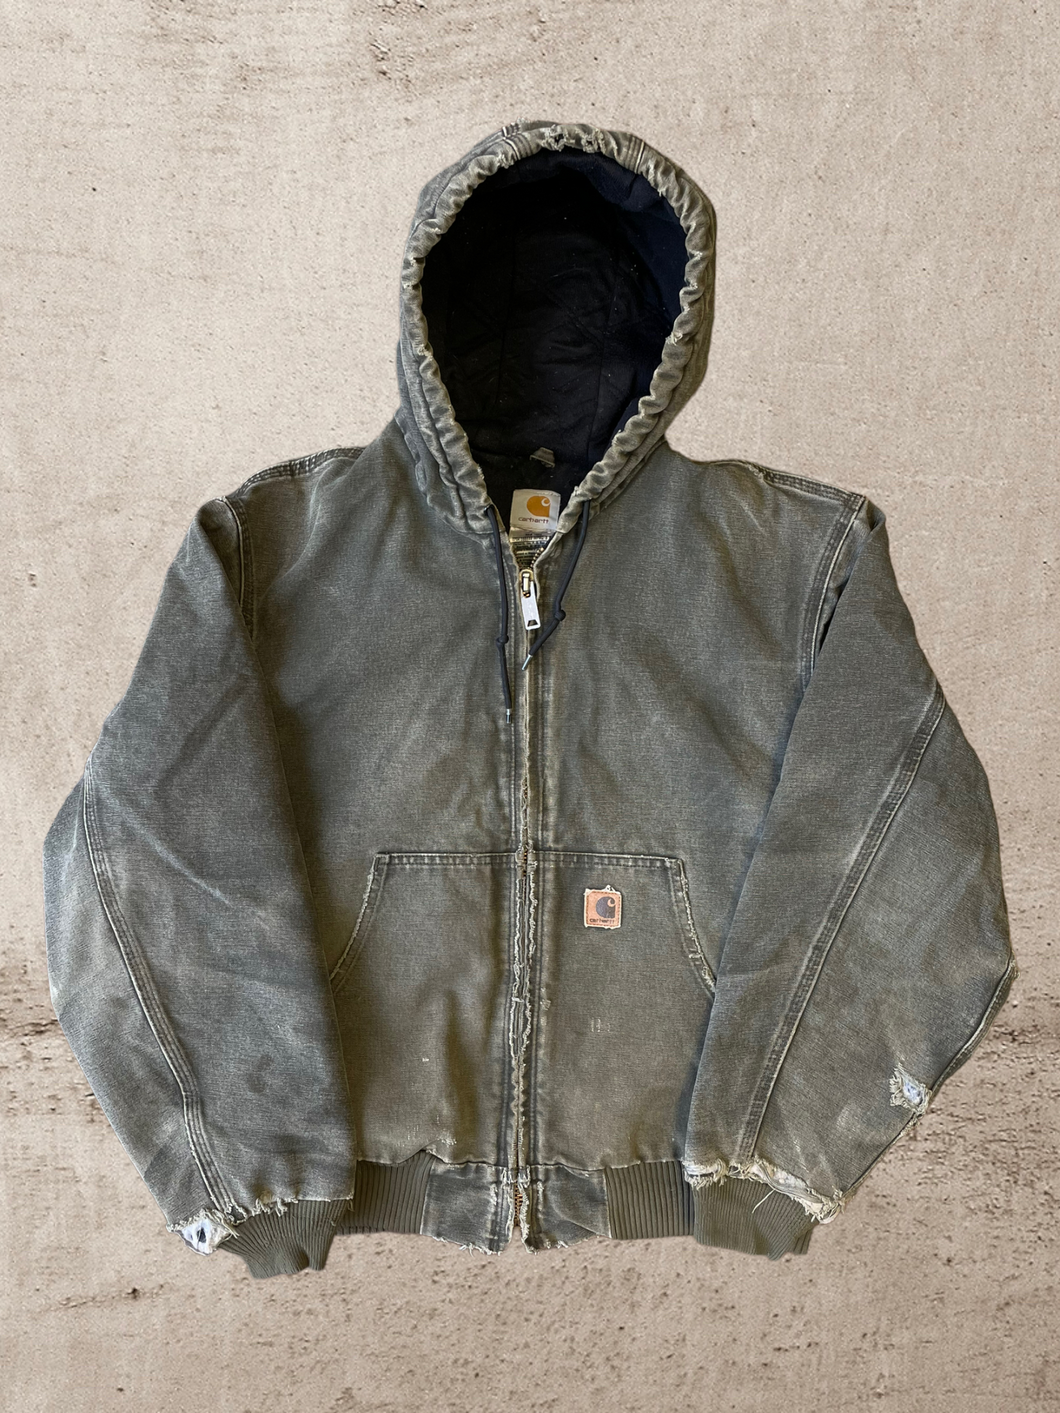 Vintage Carhartt Hooded Jacket - Large